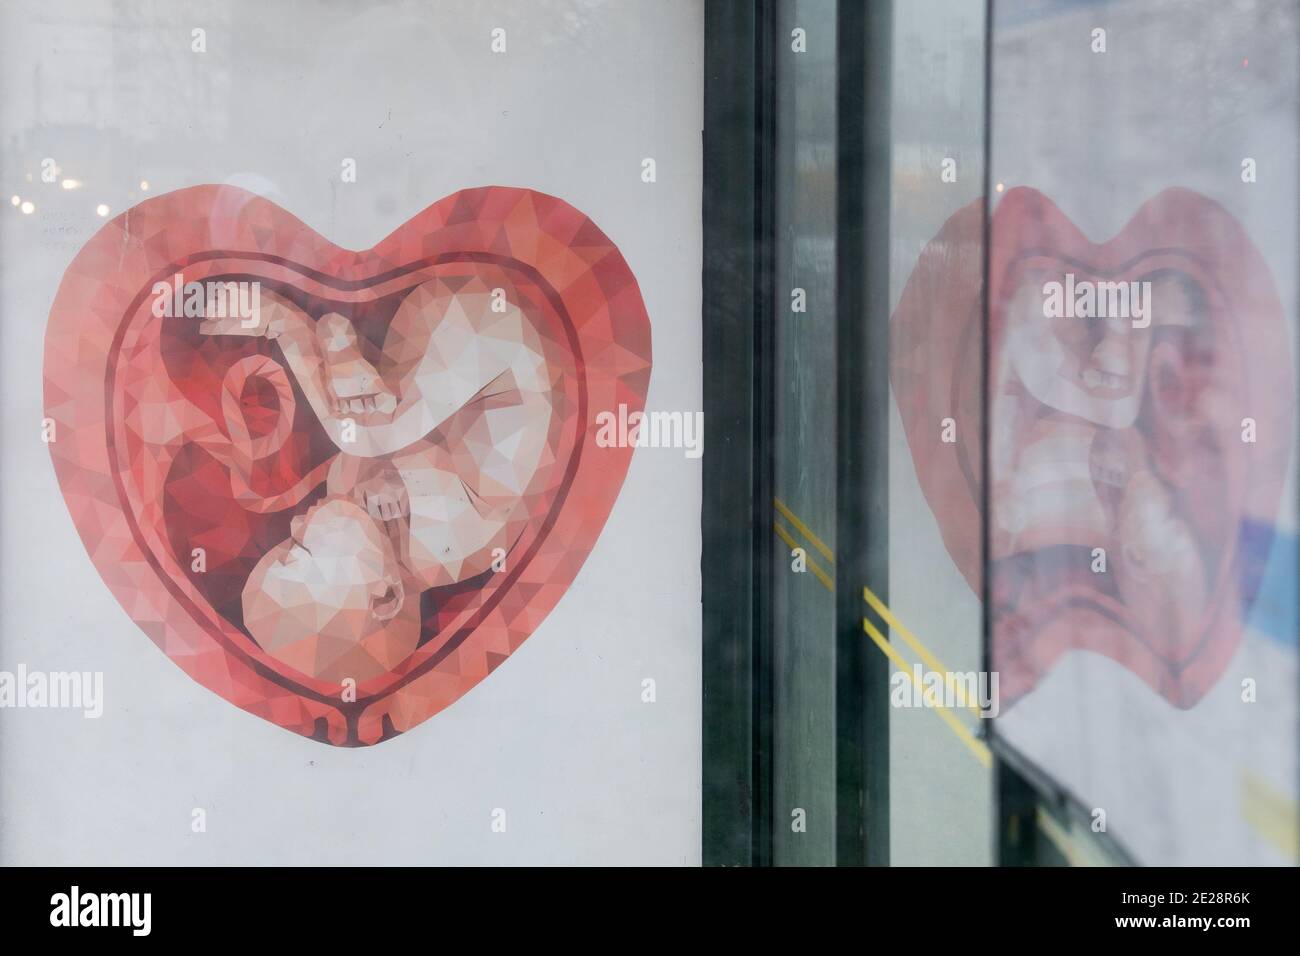 Anti abortion commercial in Gdynia, Poland December 17th 2020 © Wojciech Strozyk / Alamy Stock Photo Stock Photo